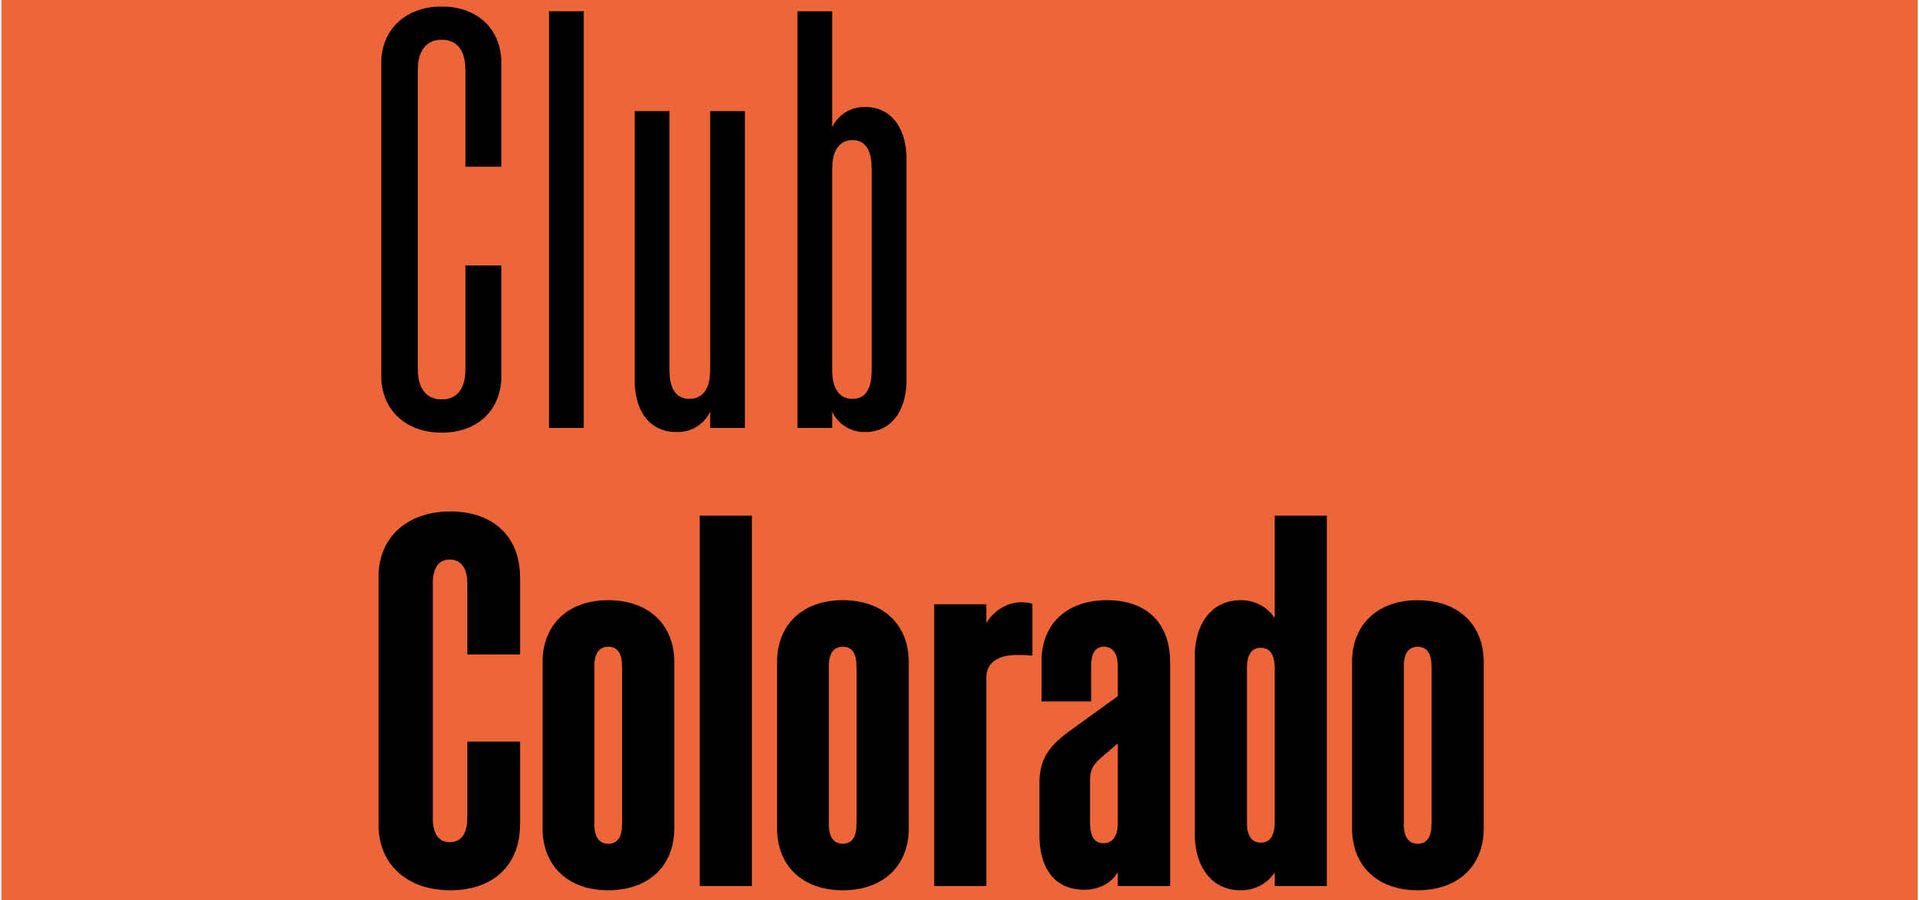 Club Colorado